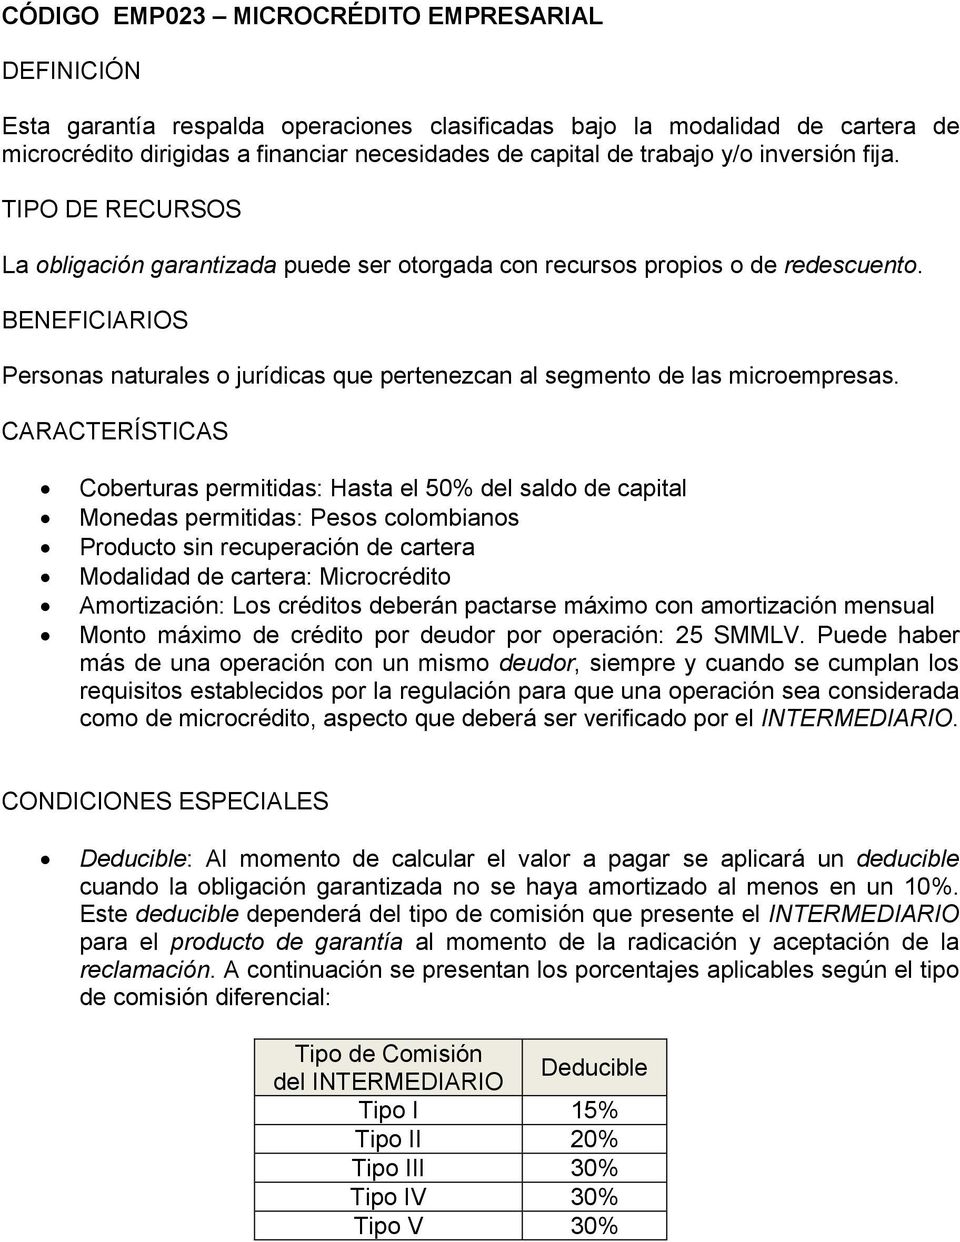 Coberturas permitidas: Hasta el 50% del saldo de capital Monedas permitidas: Pesos colombianos Producto sin recuperación de cartera Modalidad de cartera: Microcrédito Amortización: Los créditos